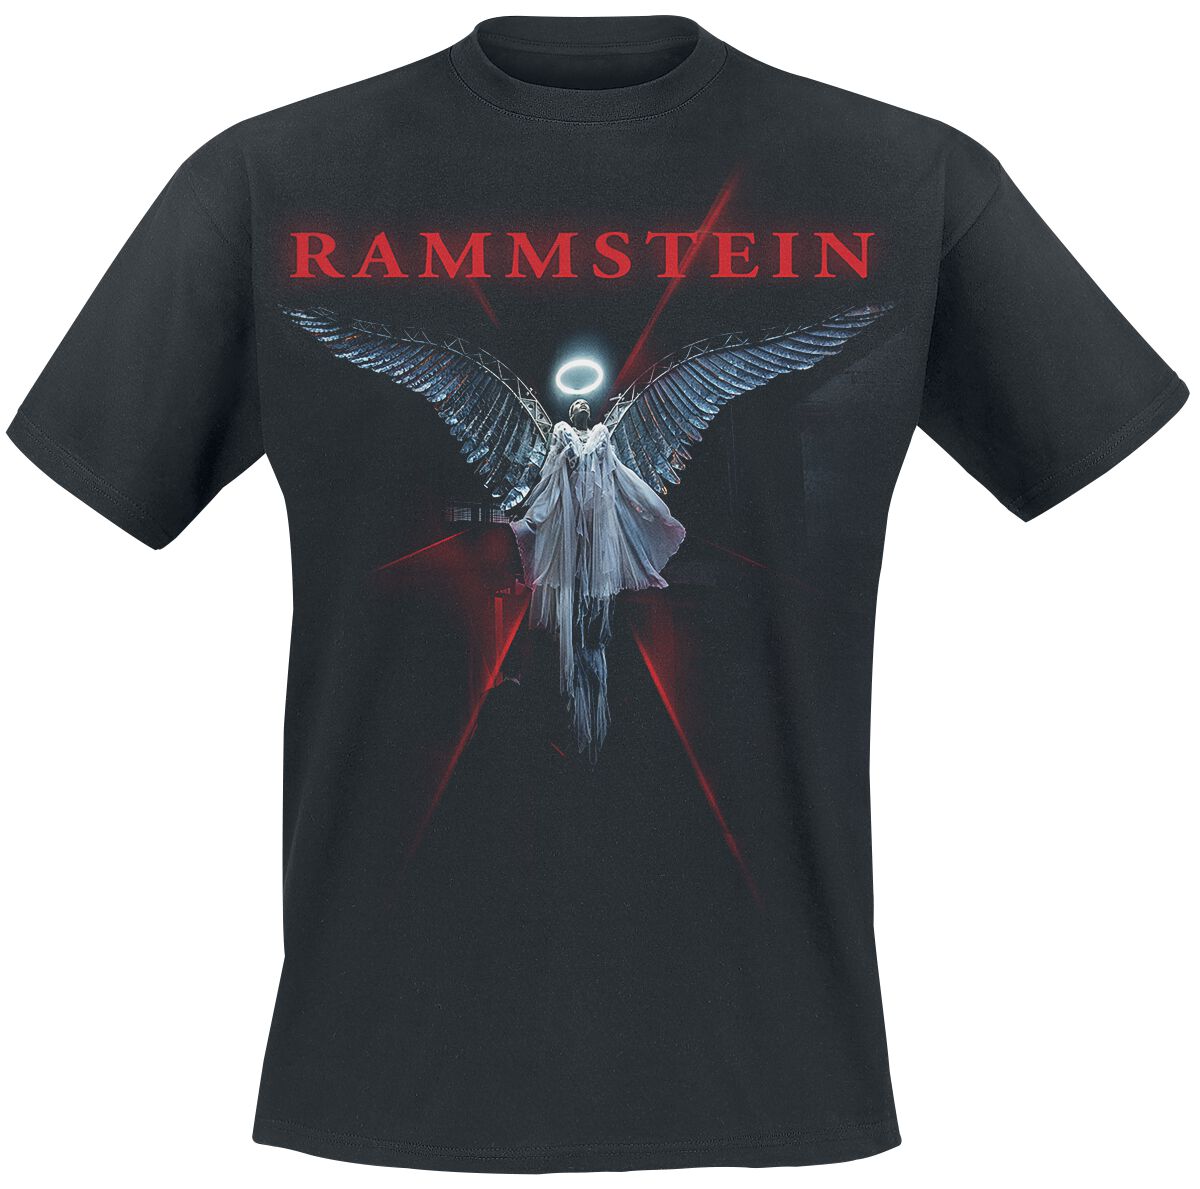 Rammstein T-Shirt - Du-Ich-Wir-Ihr - S bis 5XL - für Männer - Größe 4XL - schwarz  - Lizenziertes Merchandise!